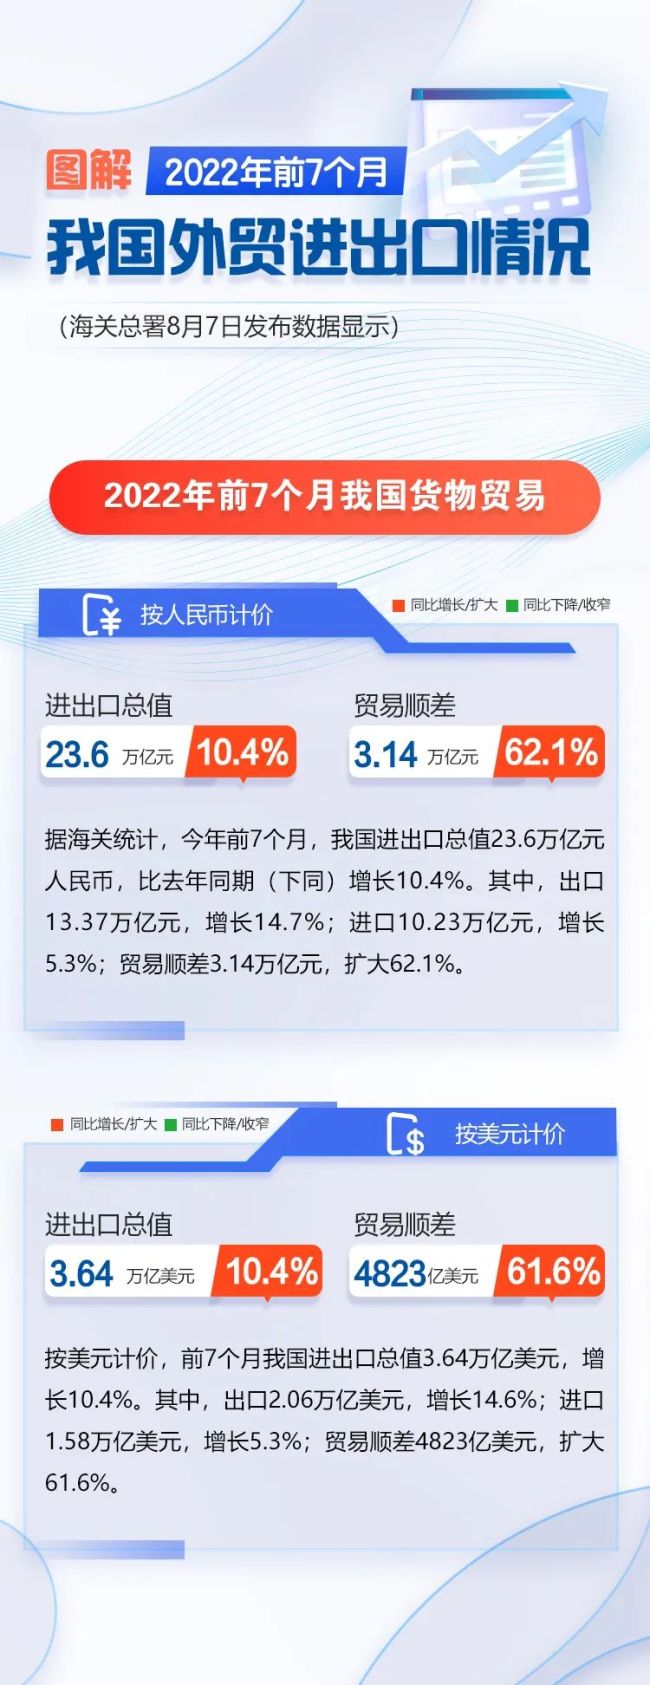 北京新增本土感染者51例 其中社会面筛查11例_PeraPlay Ads_百度热点快讯